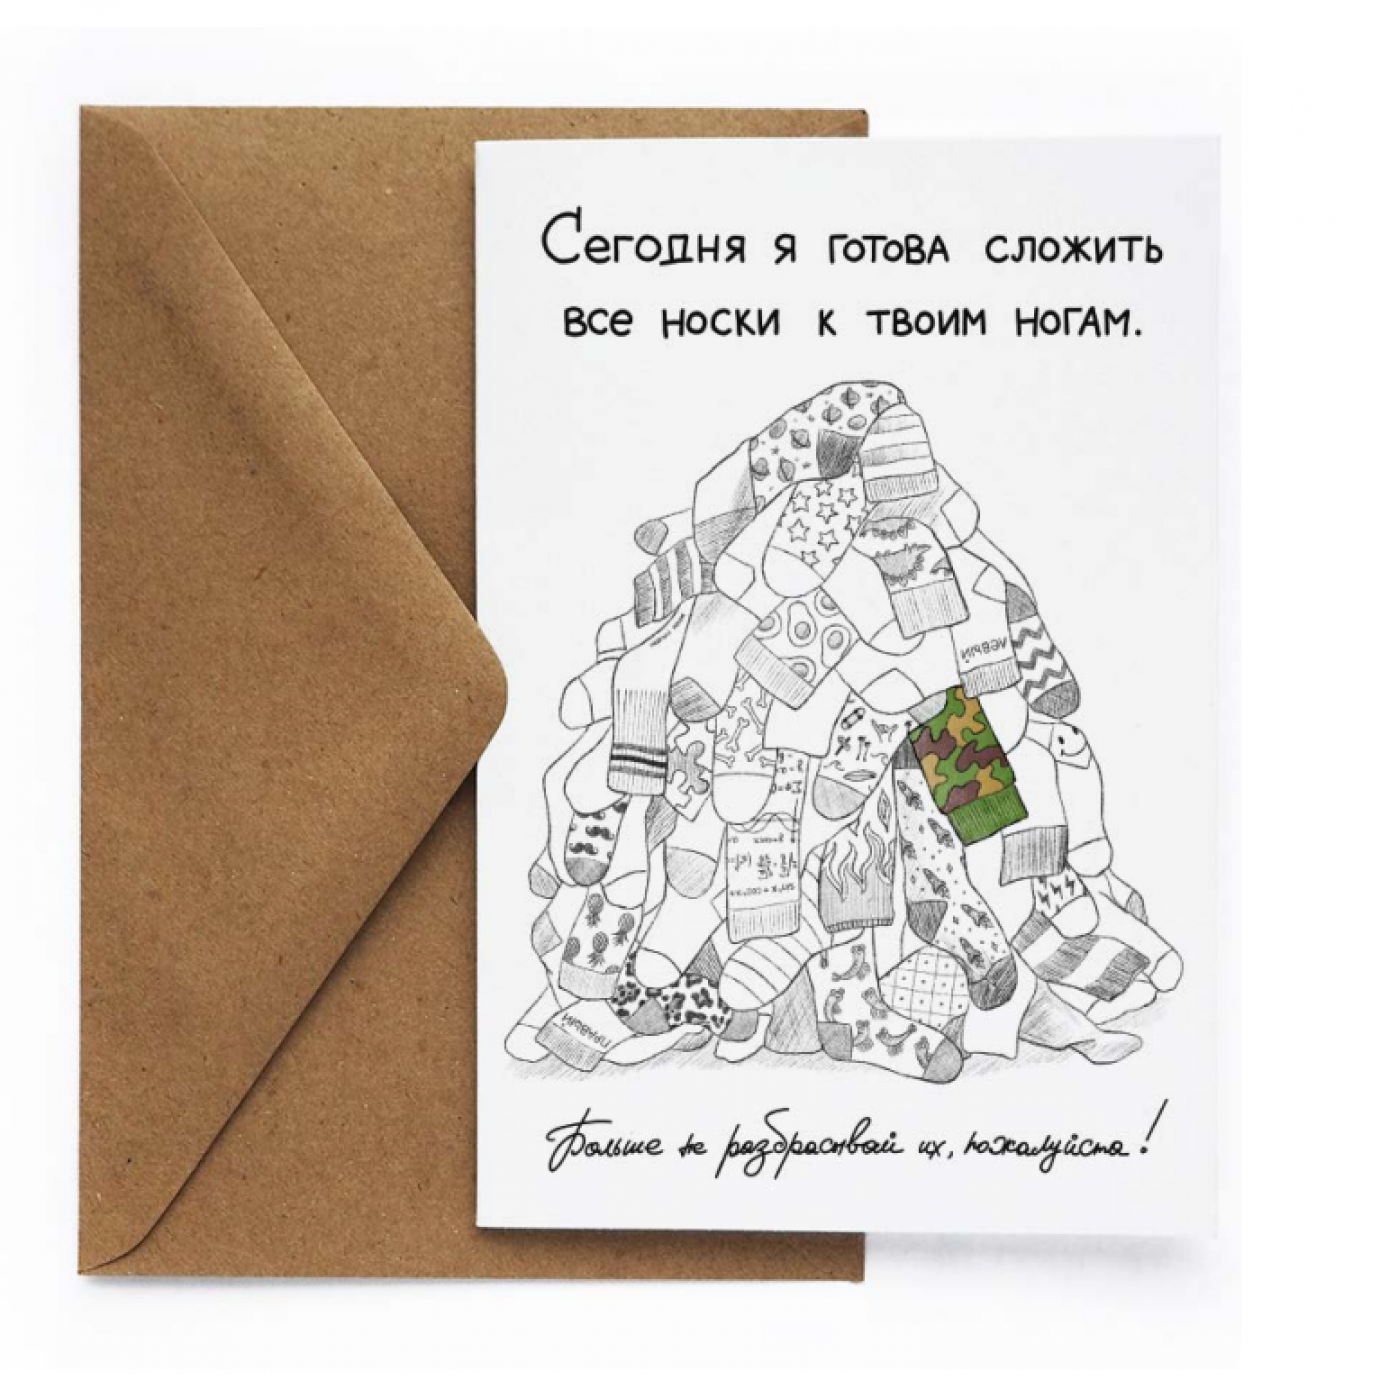 Волгоград - Интернет-магазин - Почтовые открытки для посткроссинга